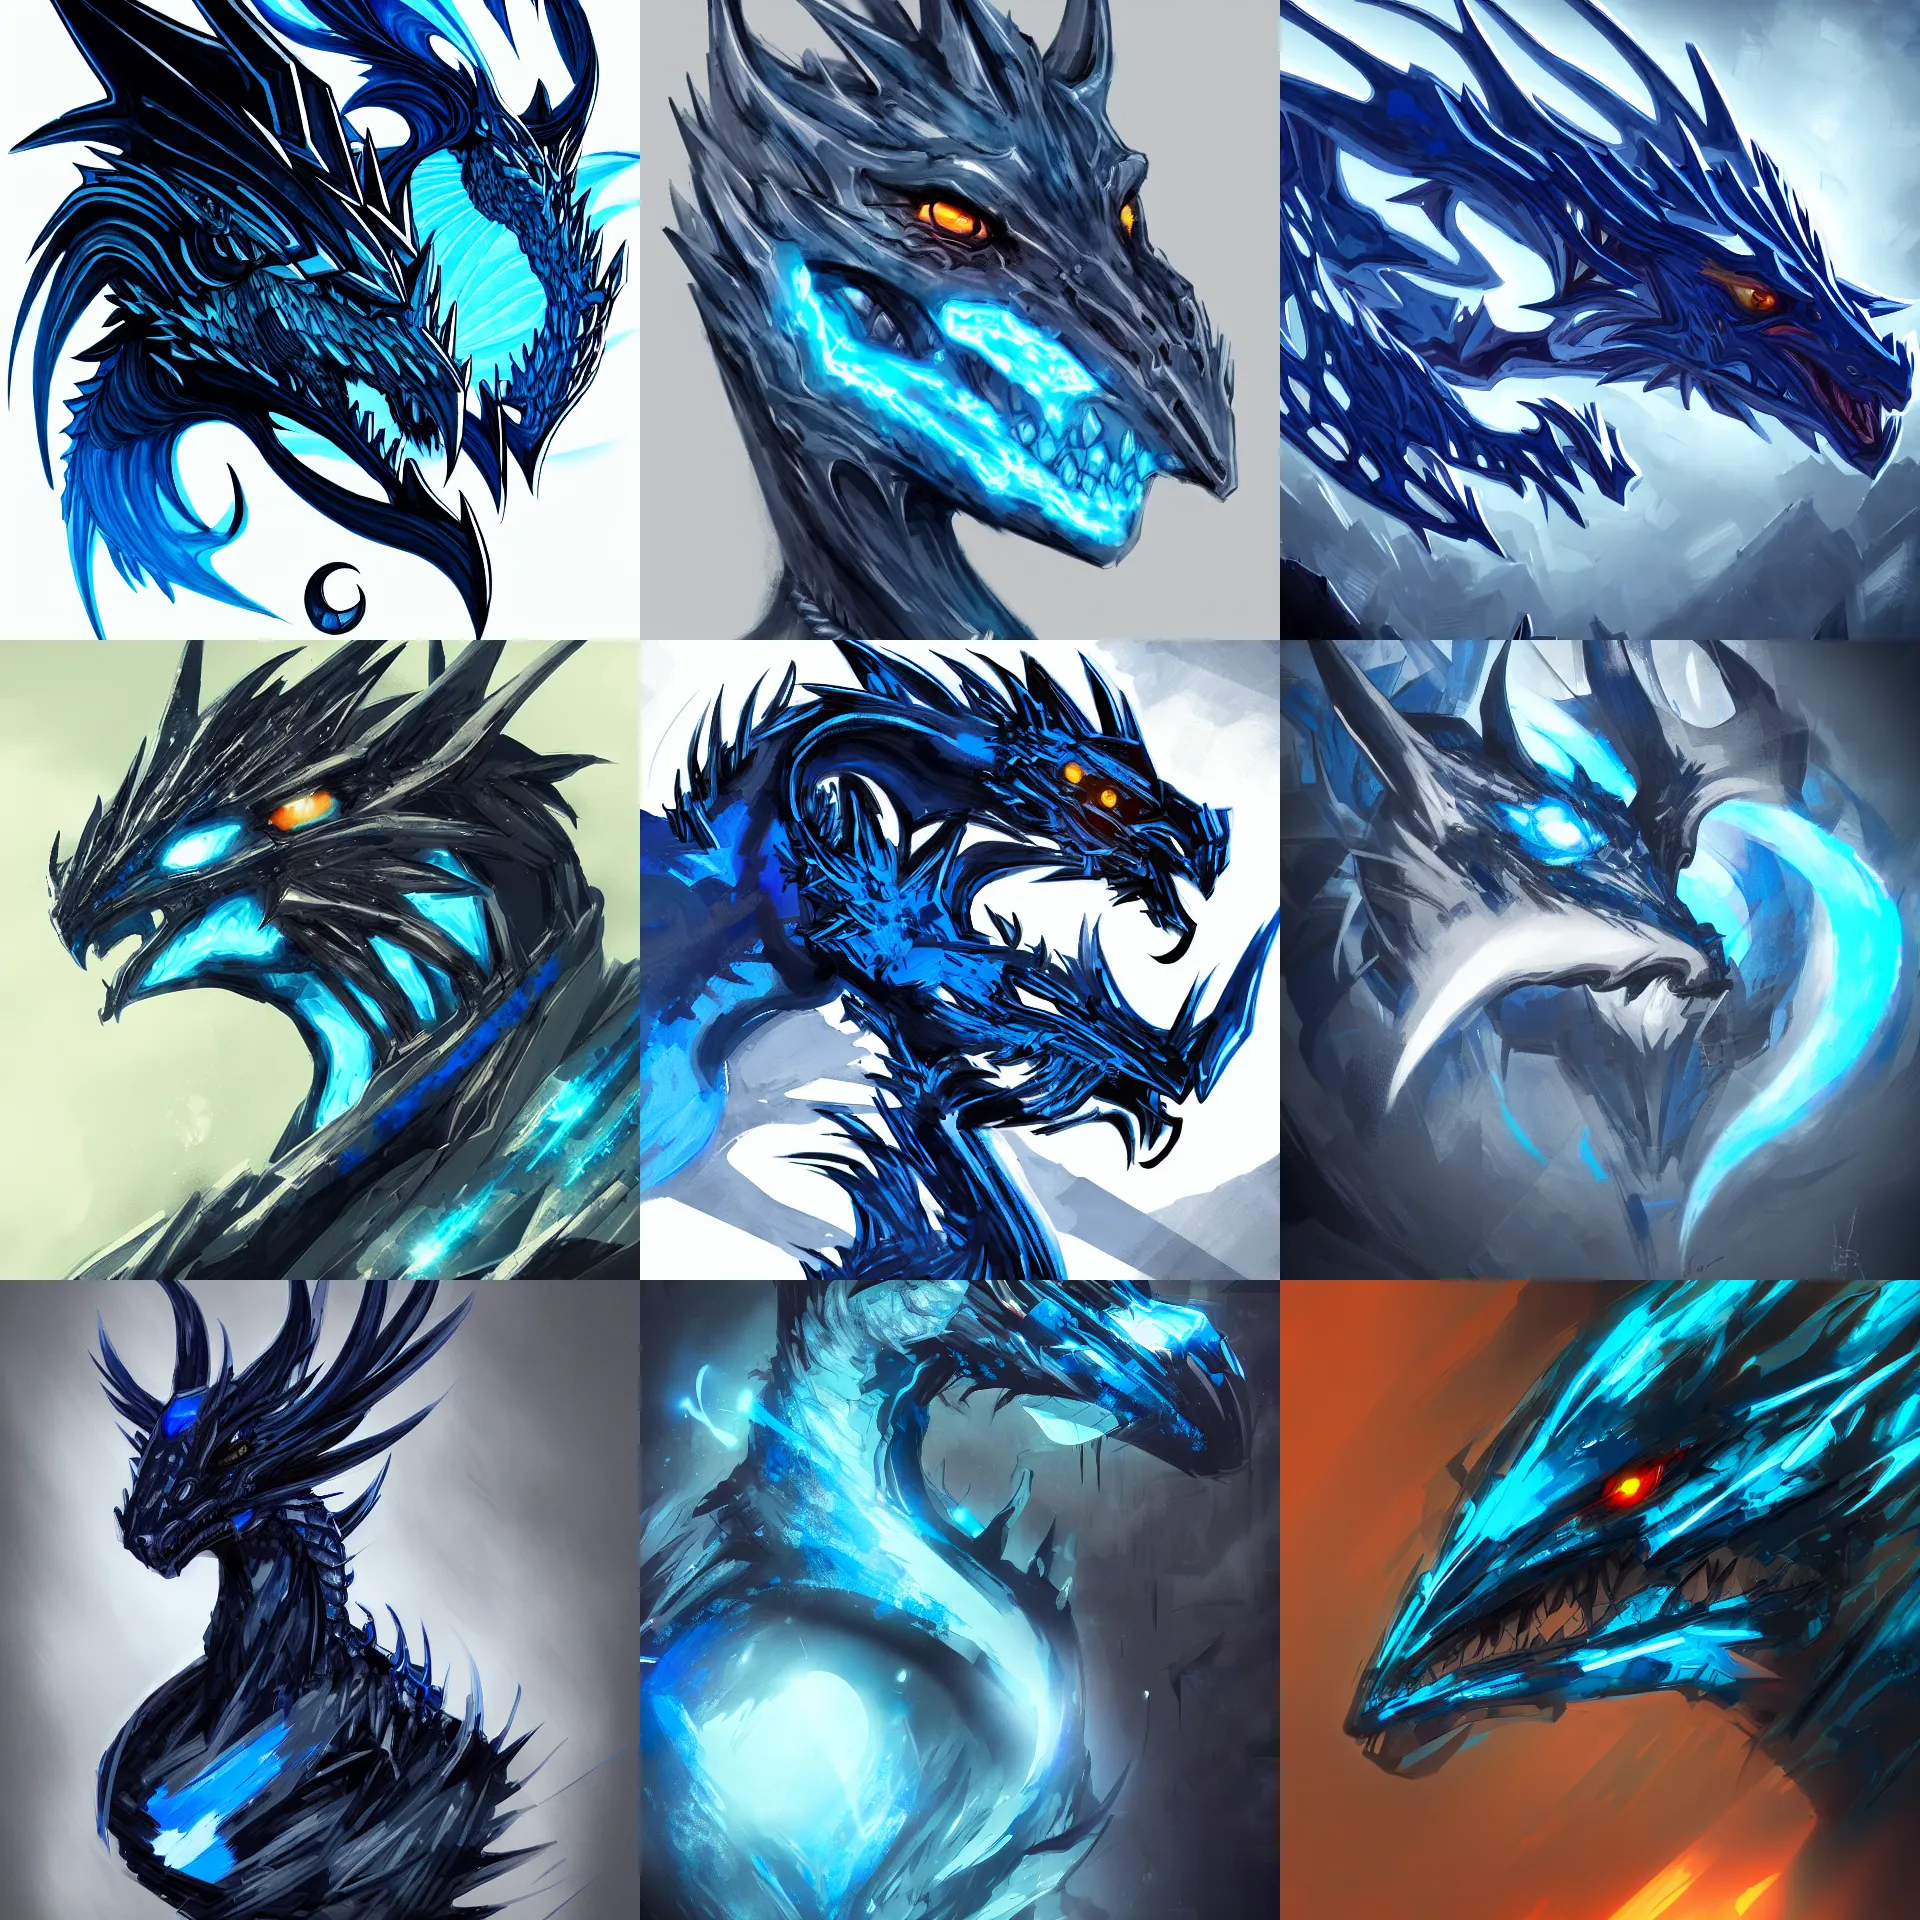 Prompt: cyber noir portrait of a blue and black dragon, concept art, artstation